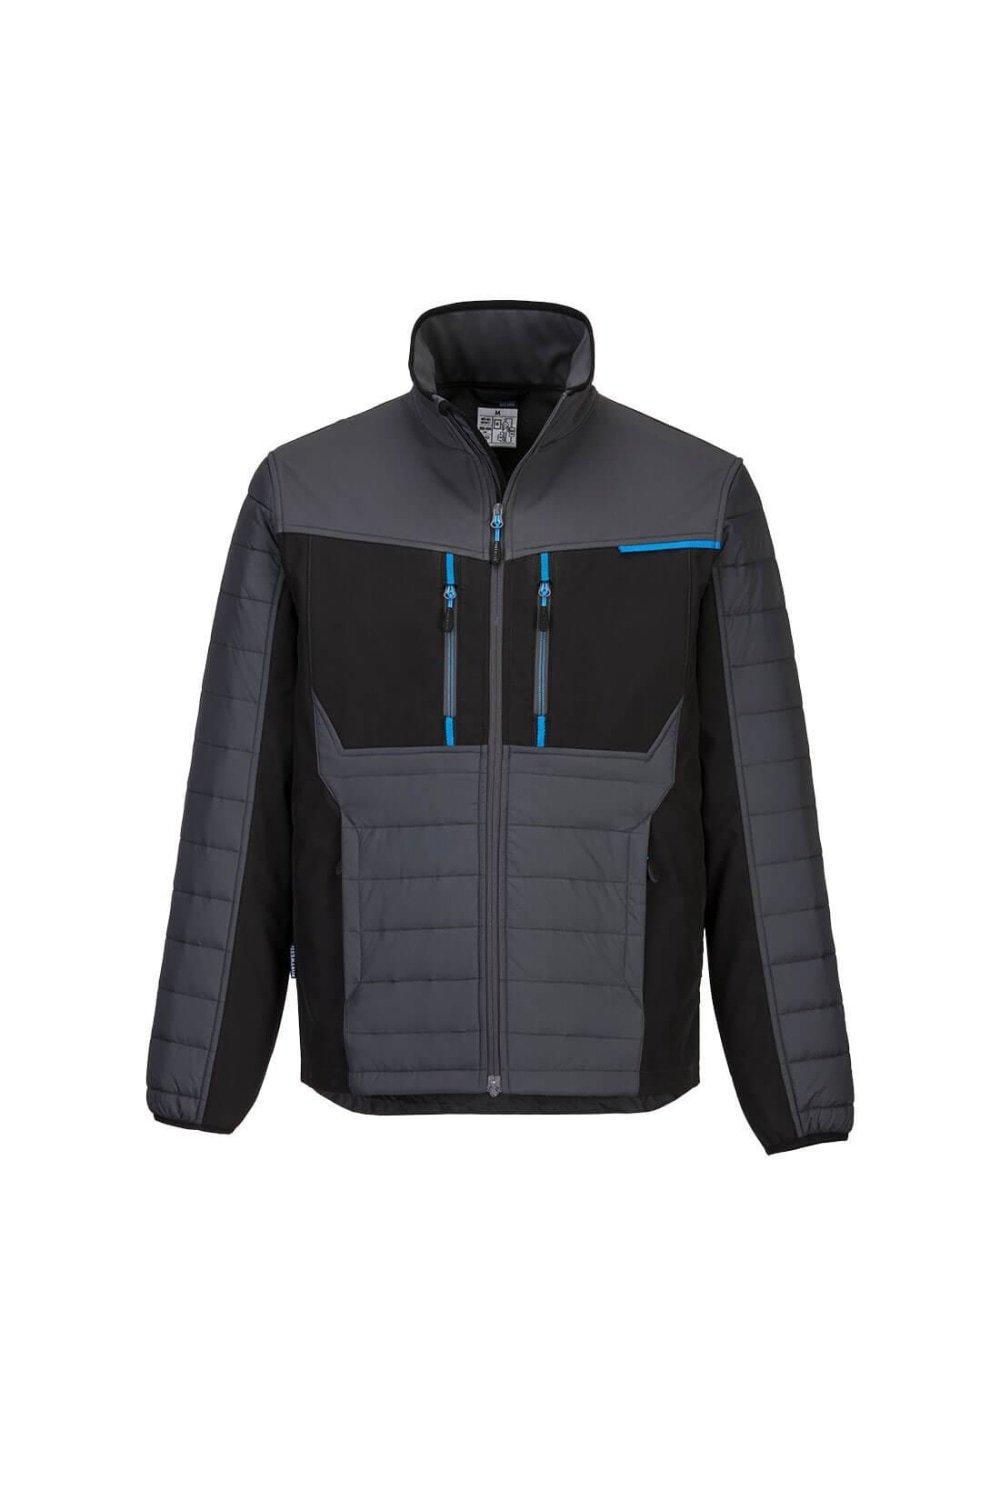 Гибридная куртка WX3 с перегородками Portwest, серый